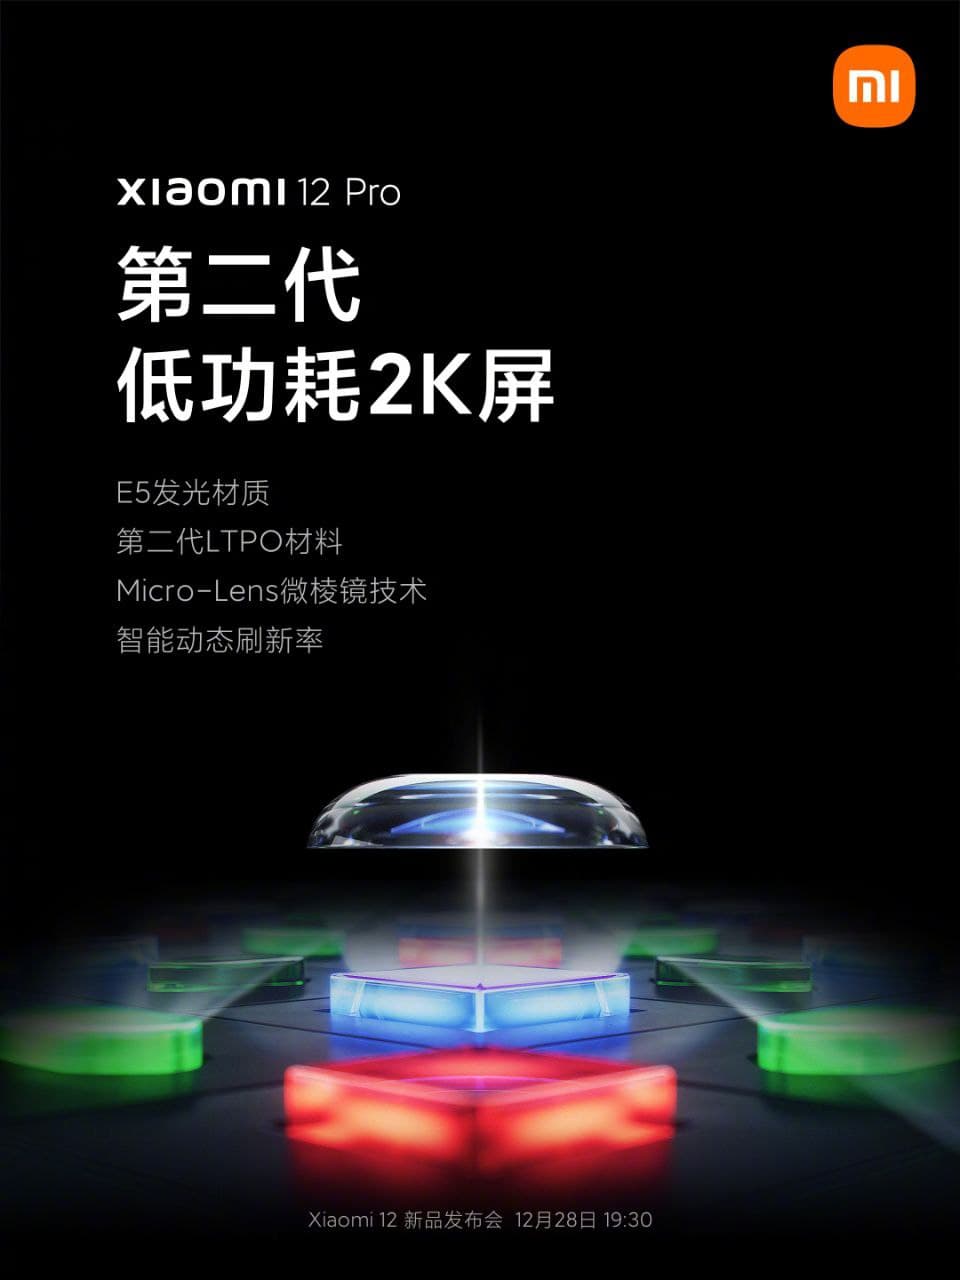 Xiaomi 12 Pro 2K Display